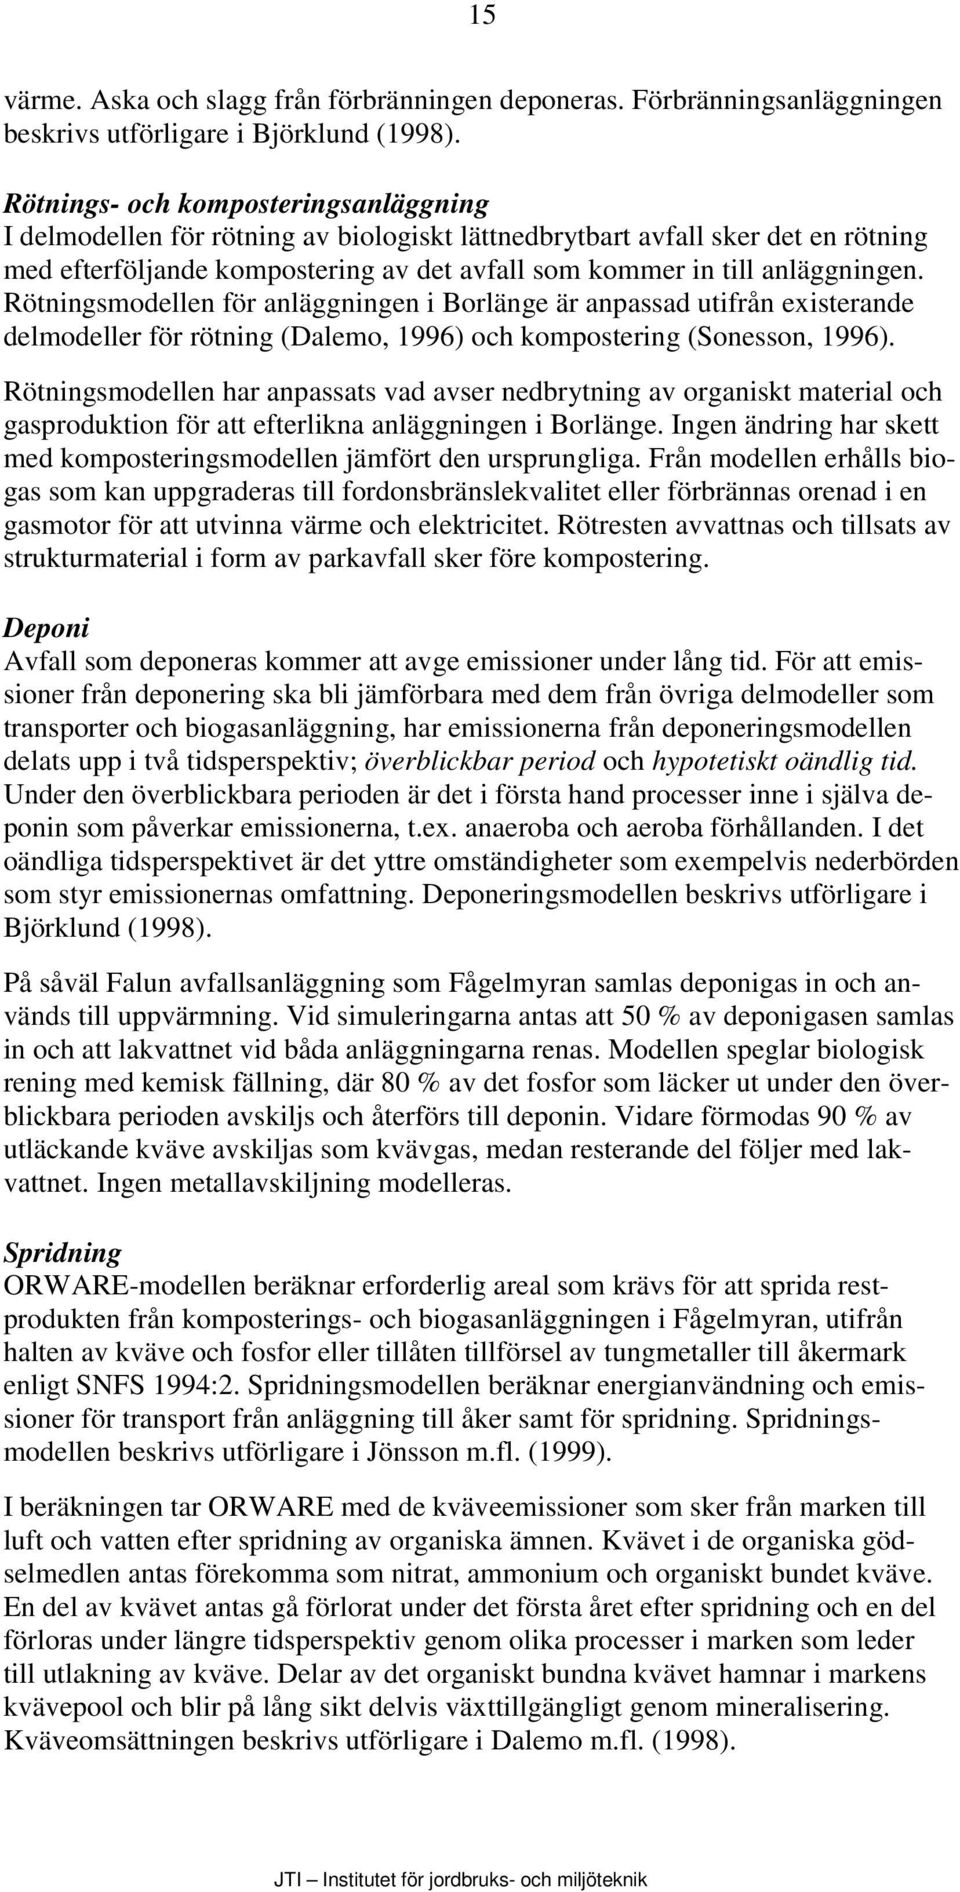 Rötningsmodellen för anläggningen i Borlänge är anpassad utifrån existerande delmodeller för rötning (Dalemo, 1996) och kompostering (Sonesson, 1996).